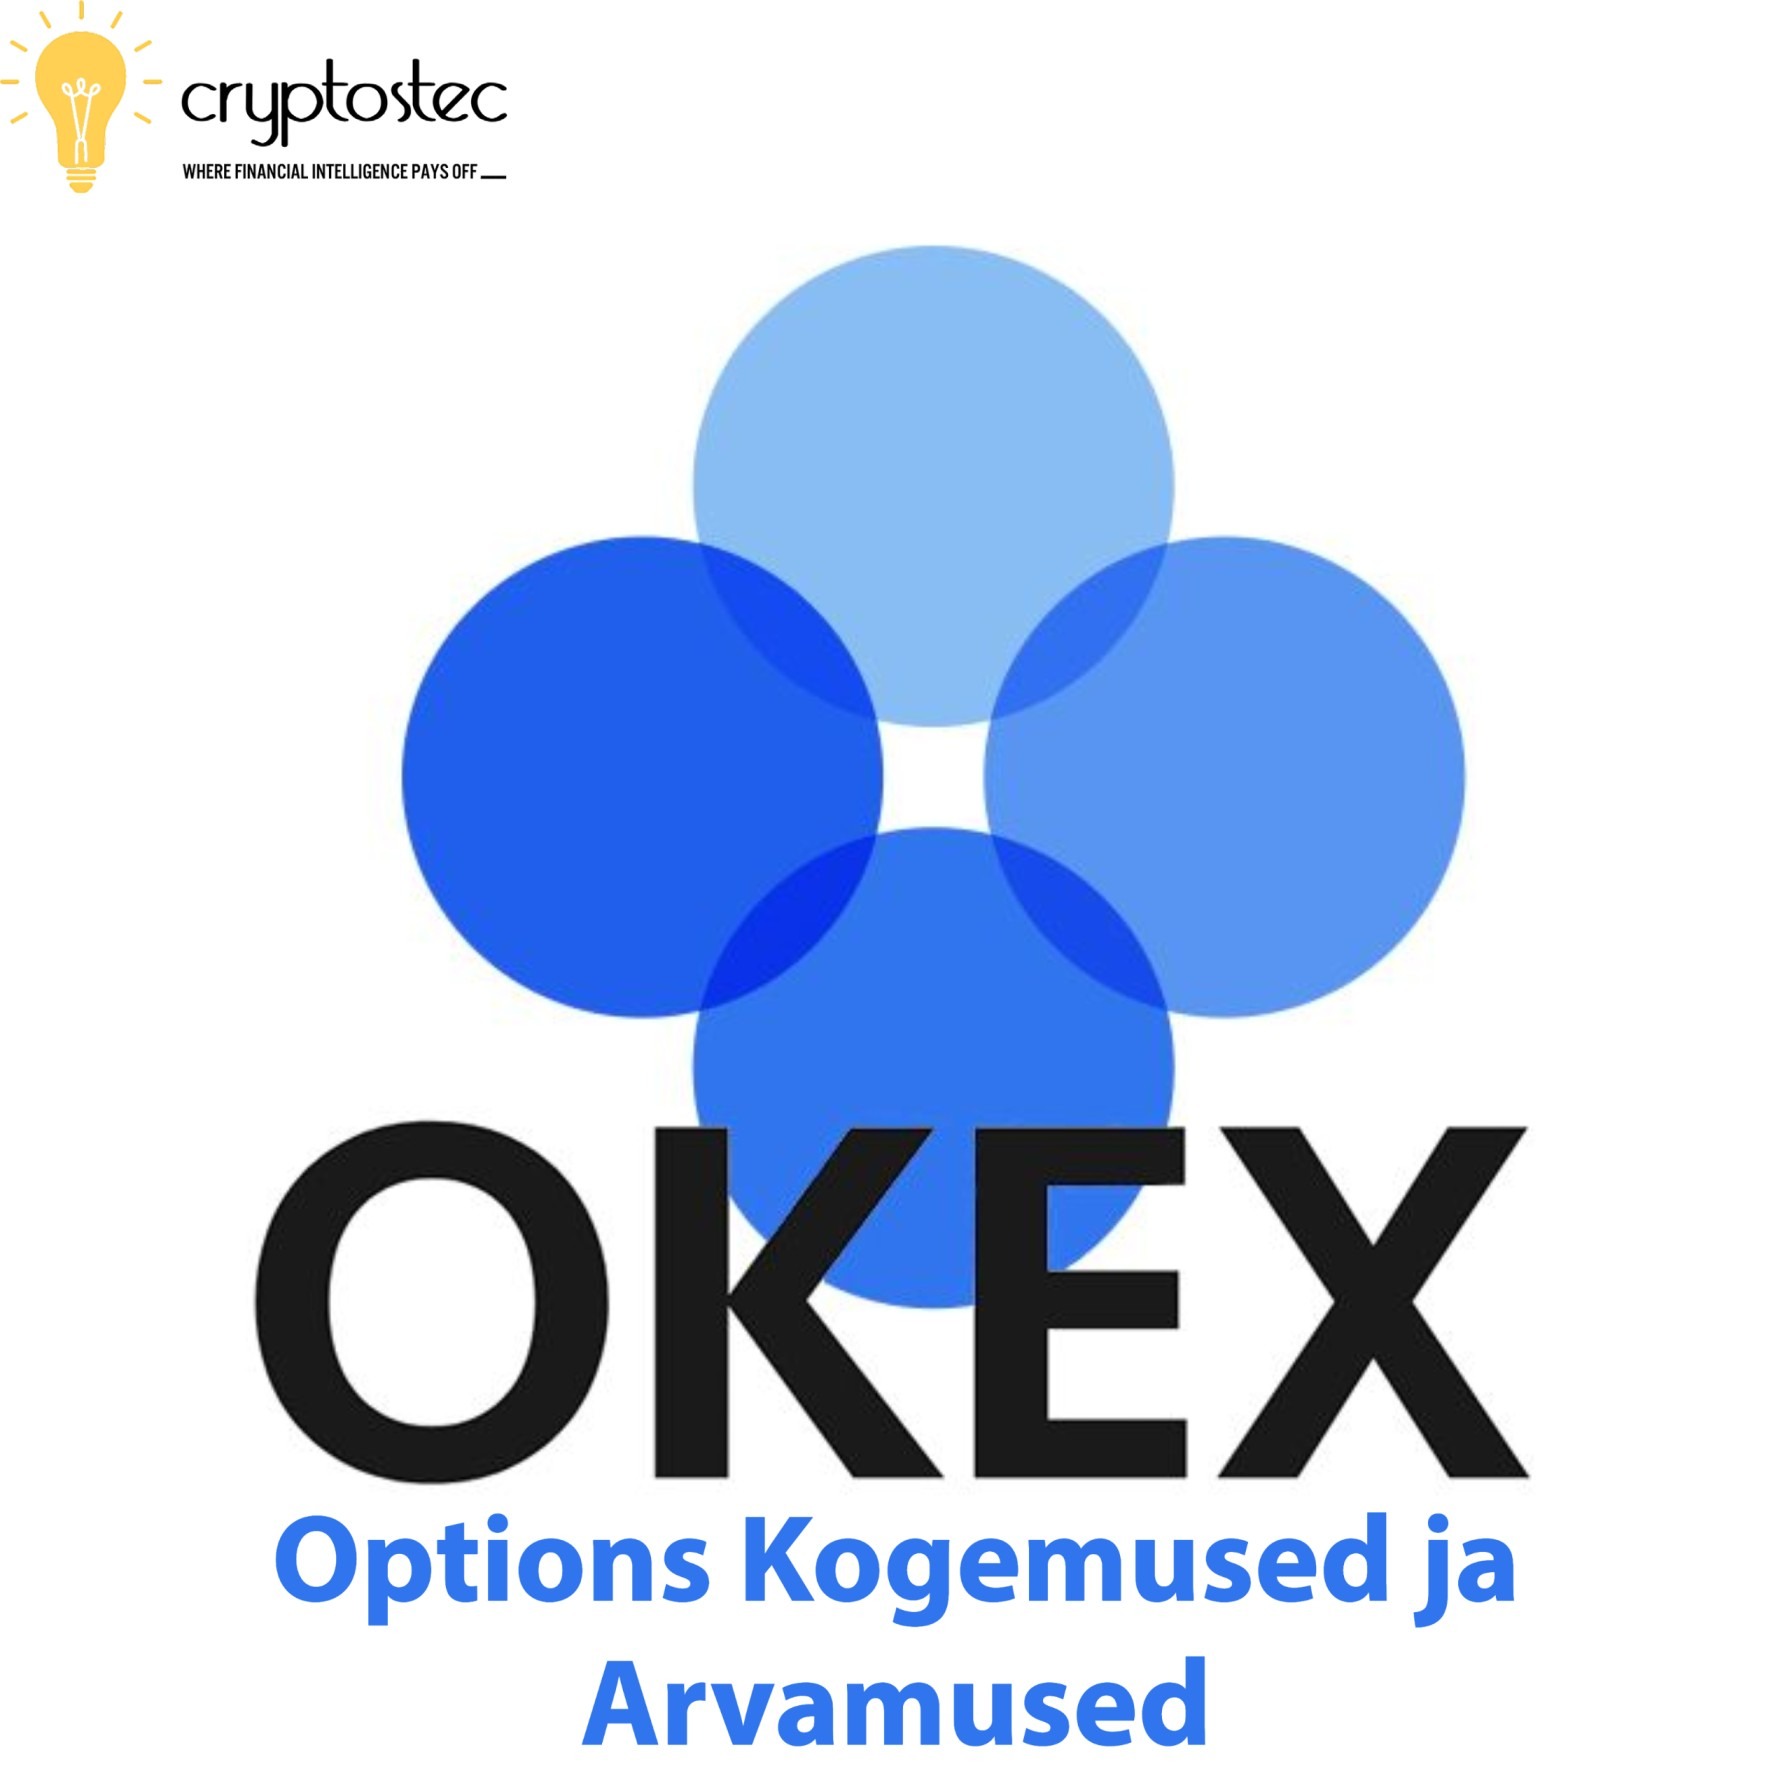 OKEX kogemused ja arvamused - Bitcoin Options väljaanne ...